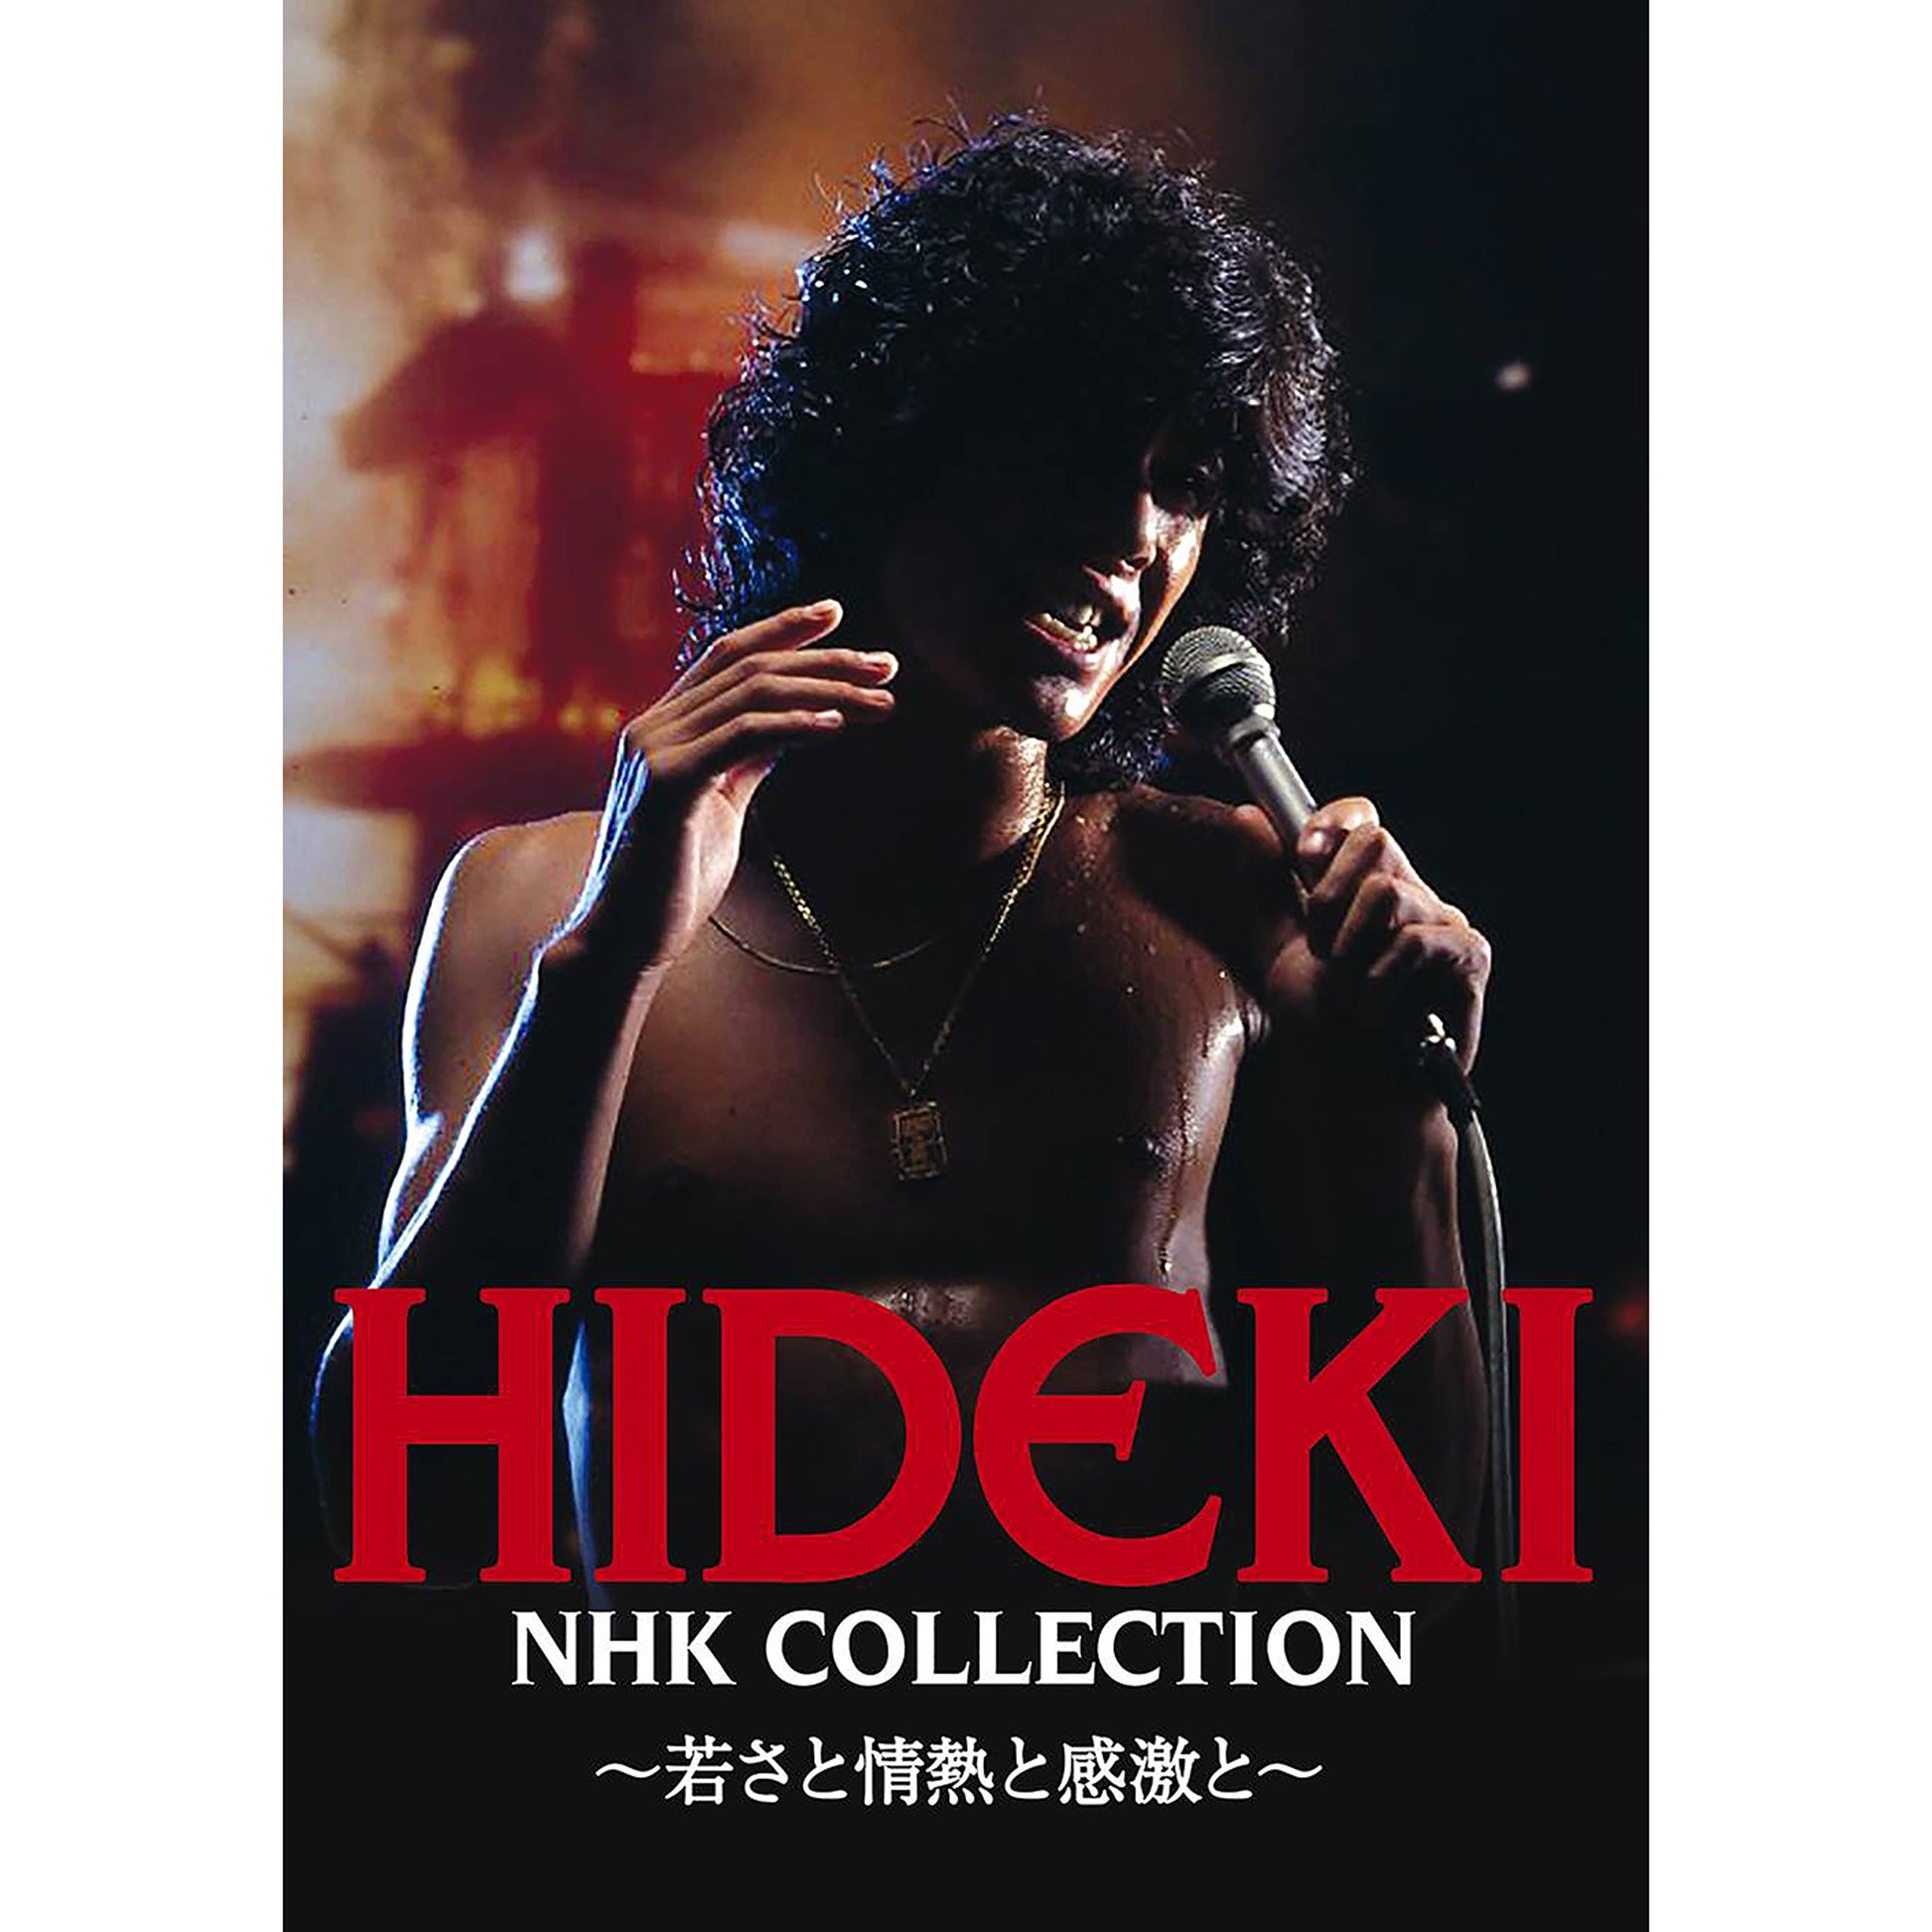 HIDEKI NHK Collection 西城秀樹 DVD BOXの他のシーンも収録しています